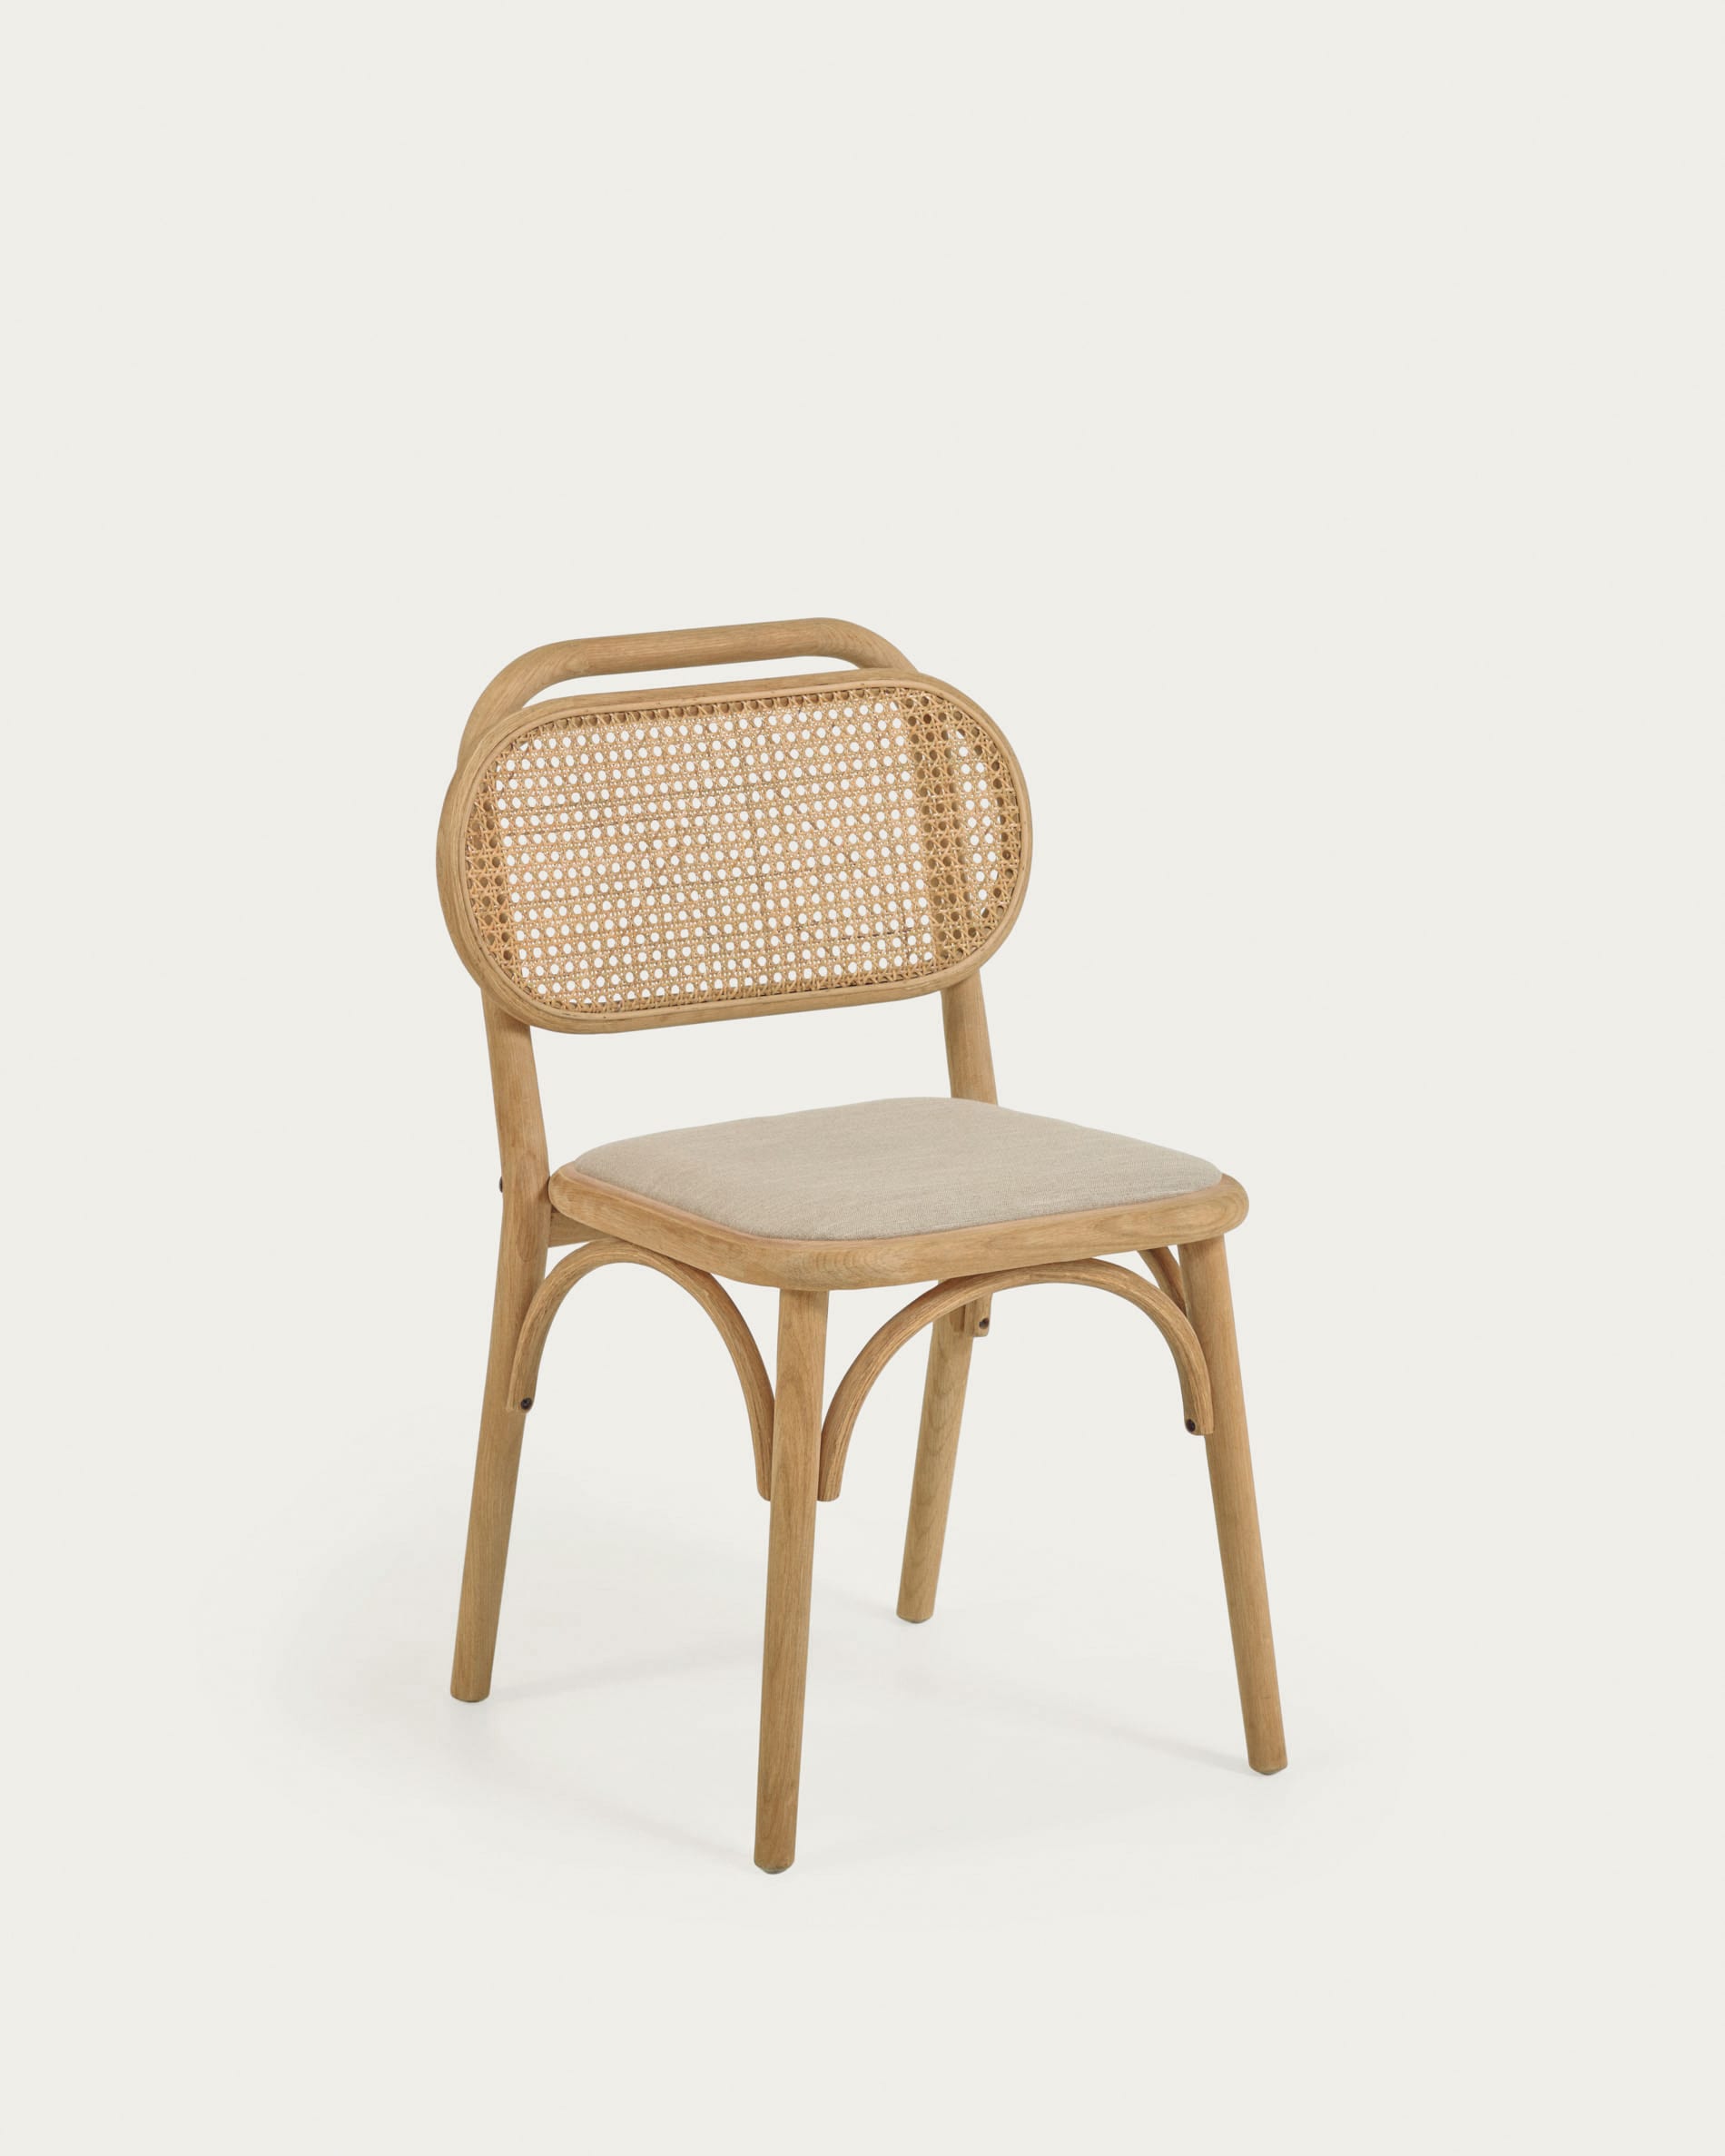 Chaise Doriane en chêne massif finition naturelle et siège avec revêtement en tissu | Kave Home